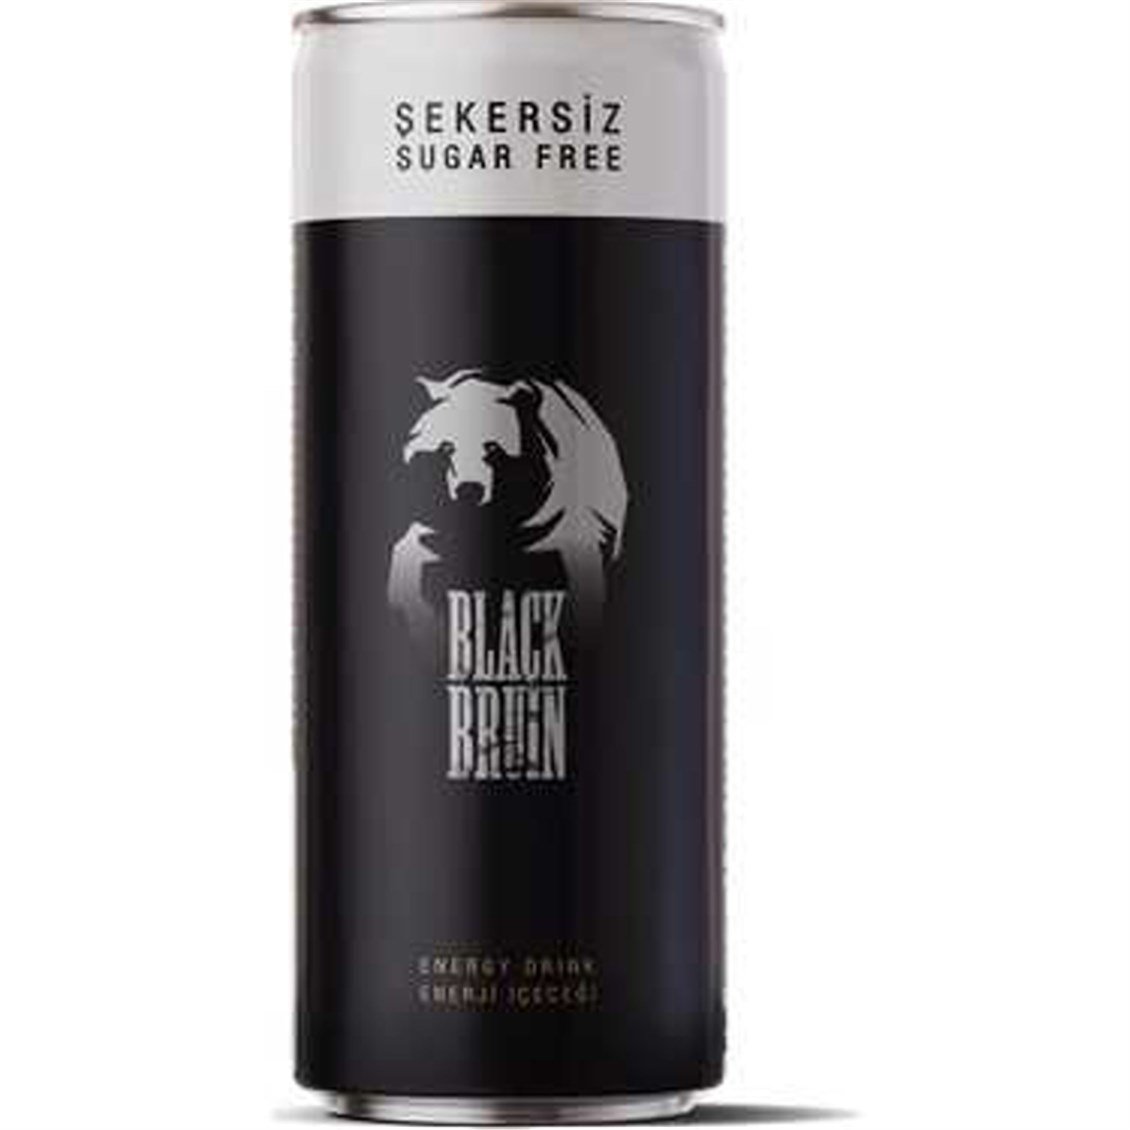 Black Bruin Şekersiz Enerji İçeceği 250 ml - Onur Market